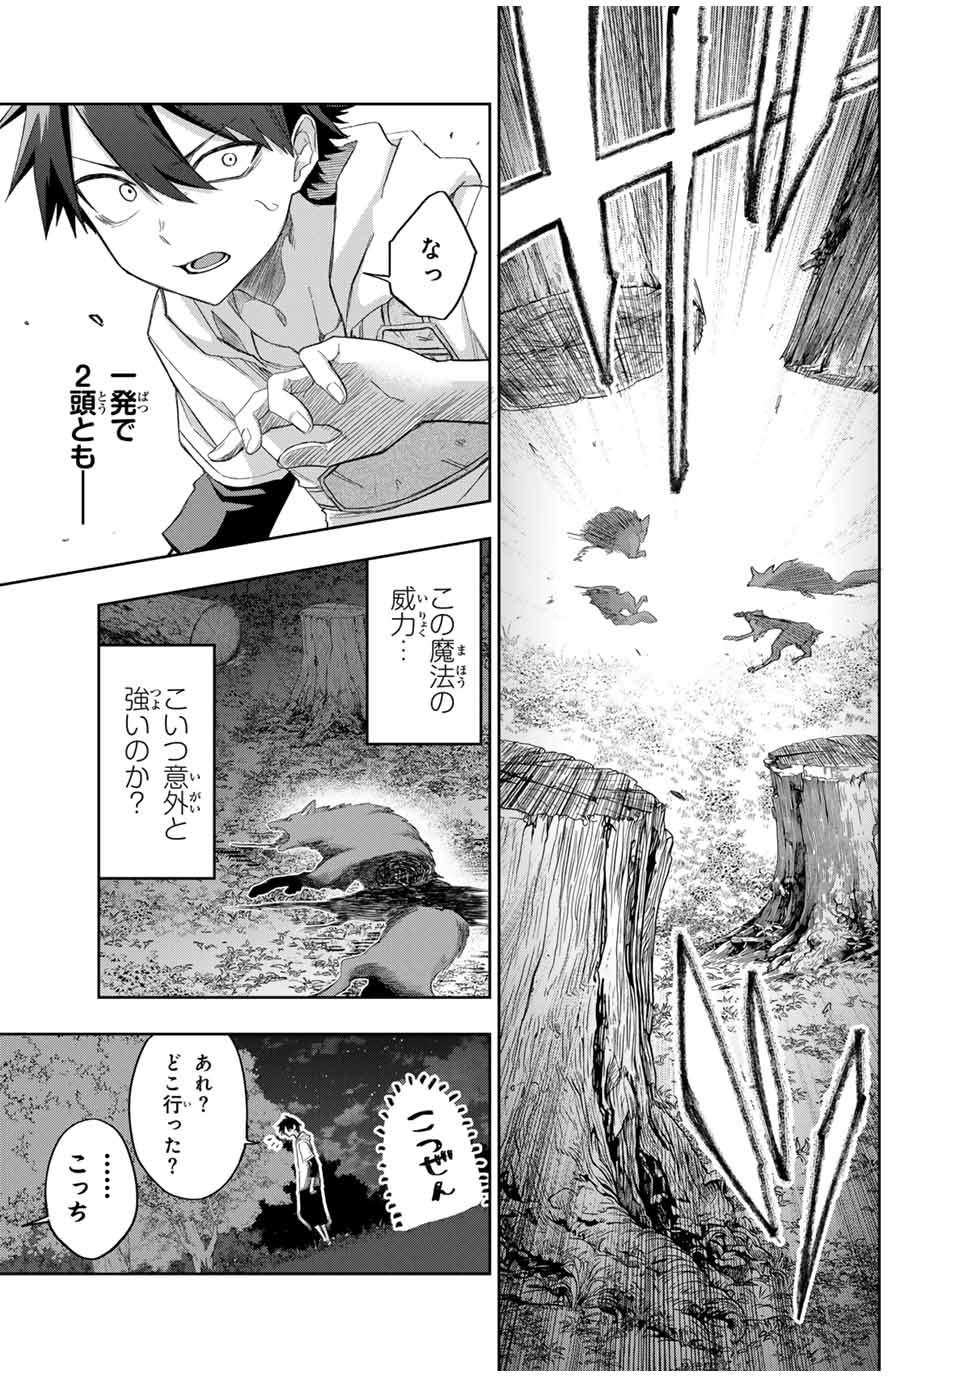 Ubau Mono Ubawareru Mono - Chapter 15 - Page 7